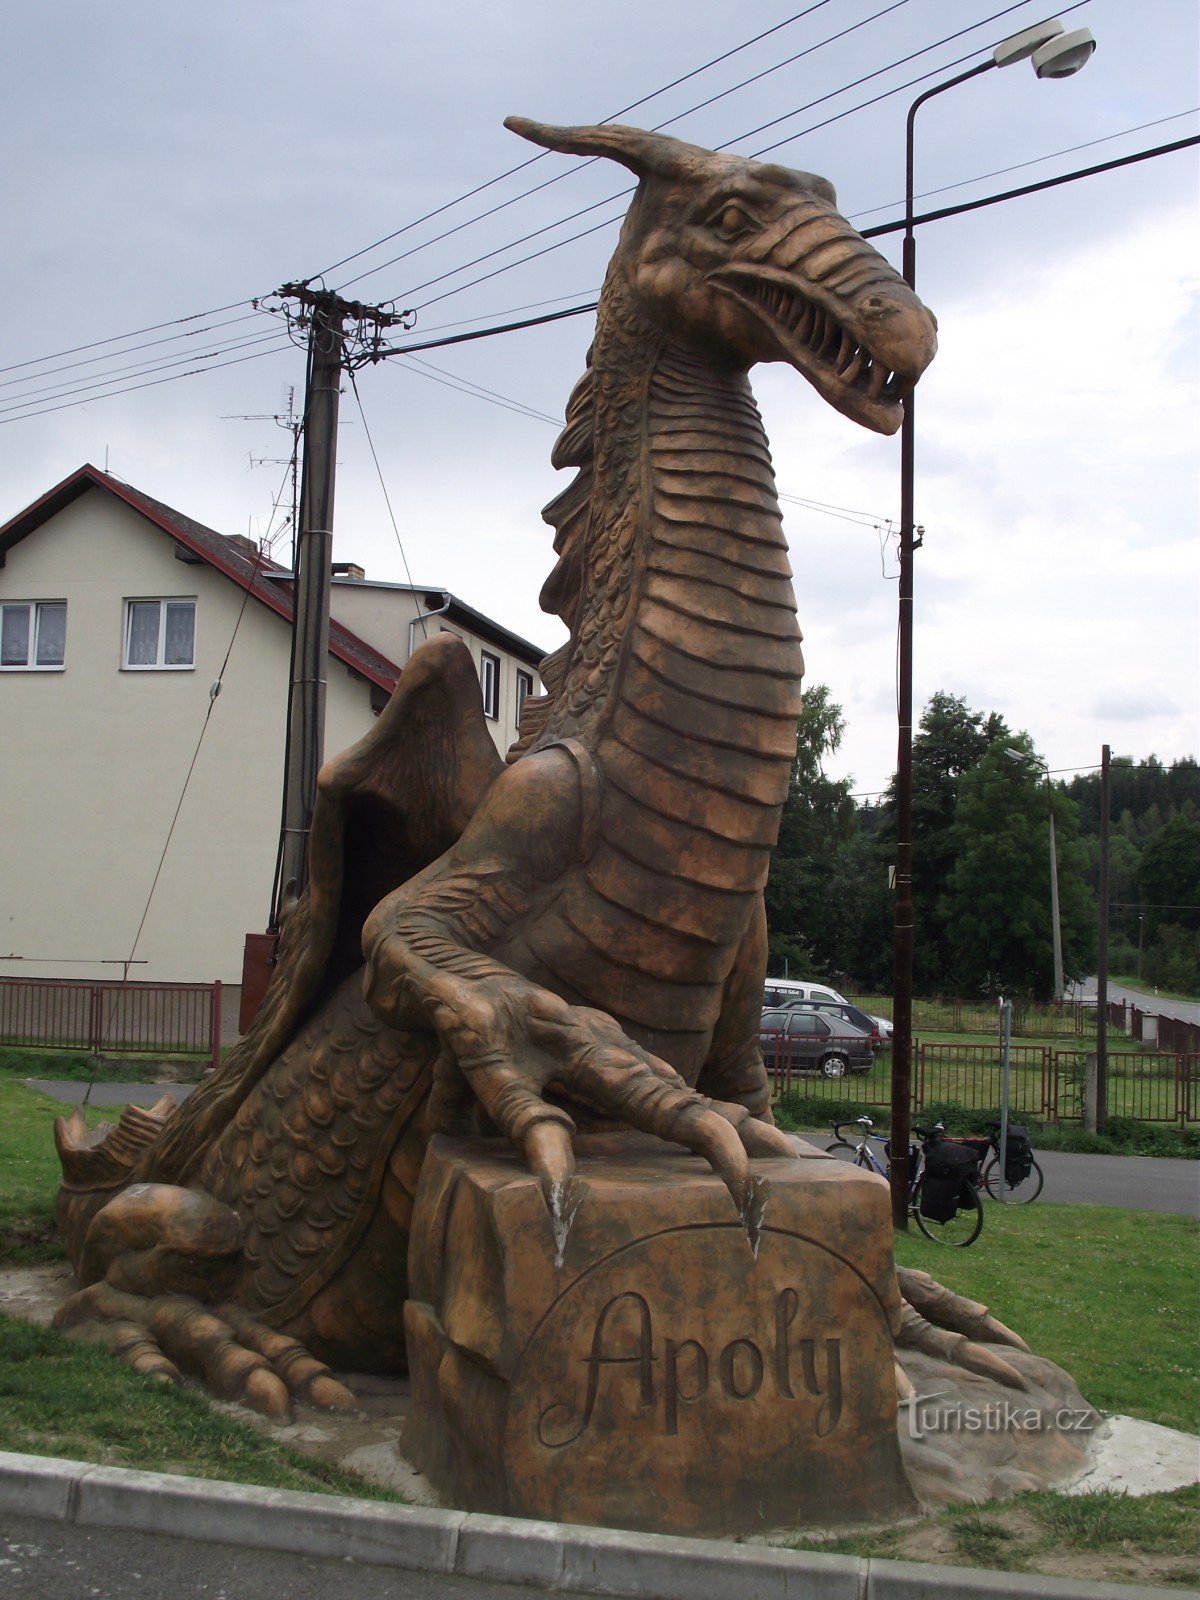 Ronov nad Sázavou – Czech dragon